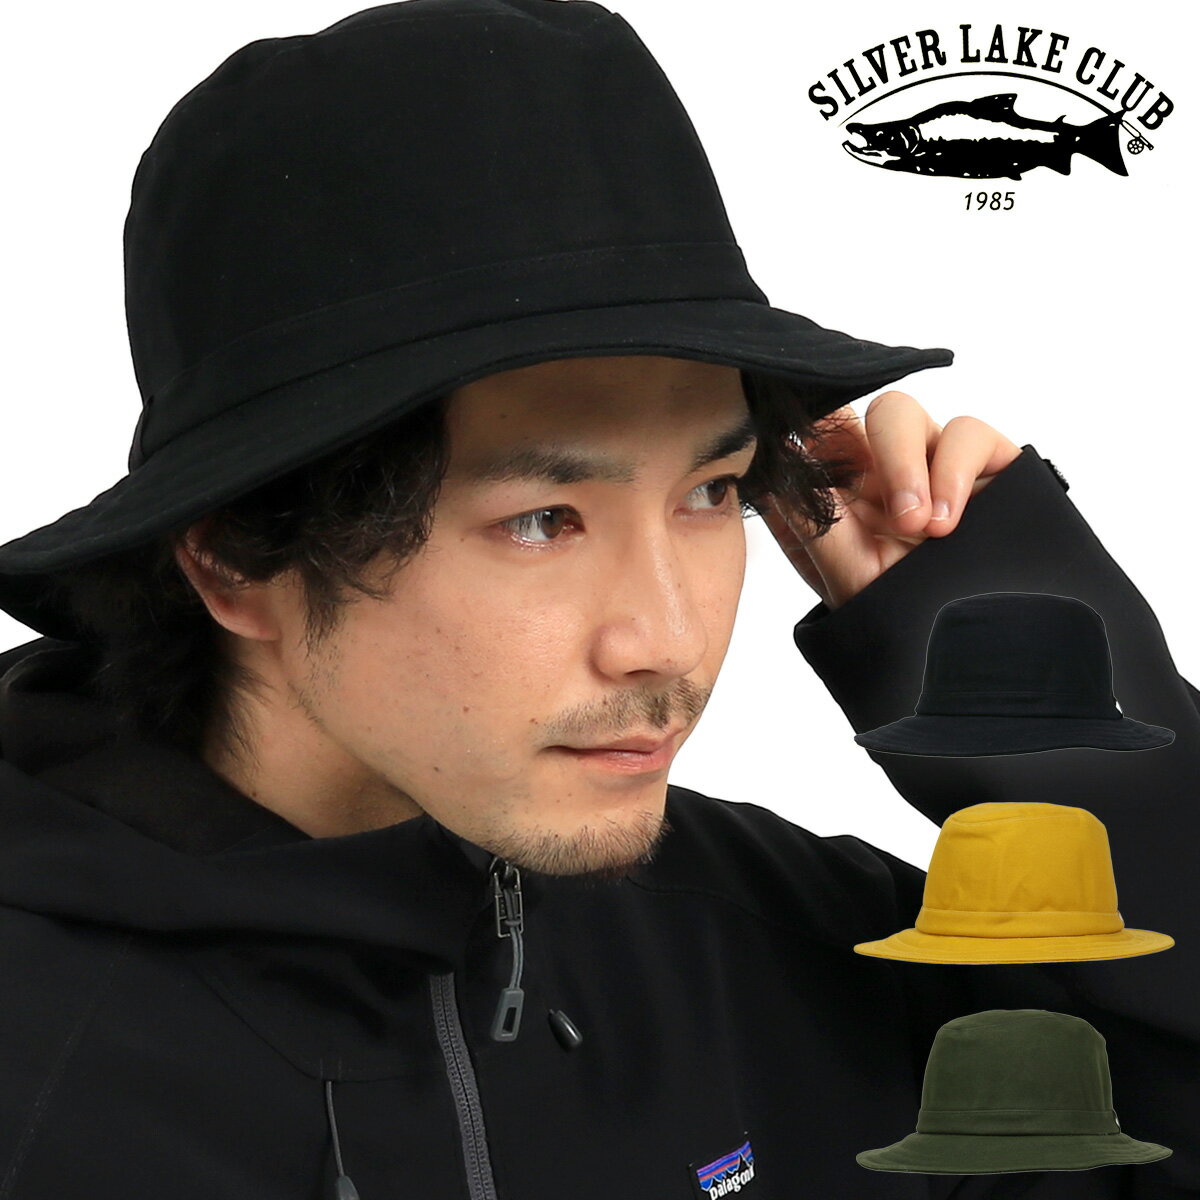 シルバーレイククラブ サファリハット 日本製 9号帆布 メンズ レディース SILVER LAKE CLUB 帽子 防水性 通気性 当社限定 別注モデル 暑さ対策 熱中症対策 即日発送 DL10